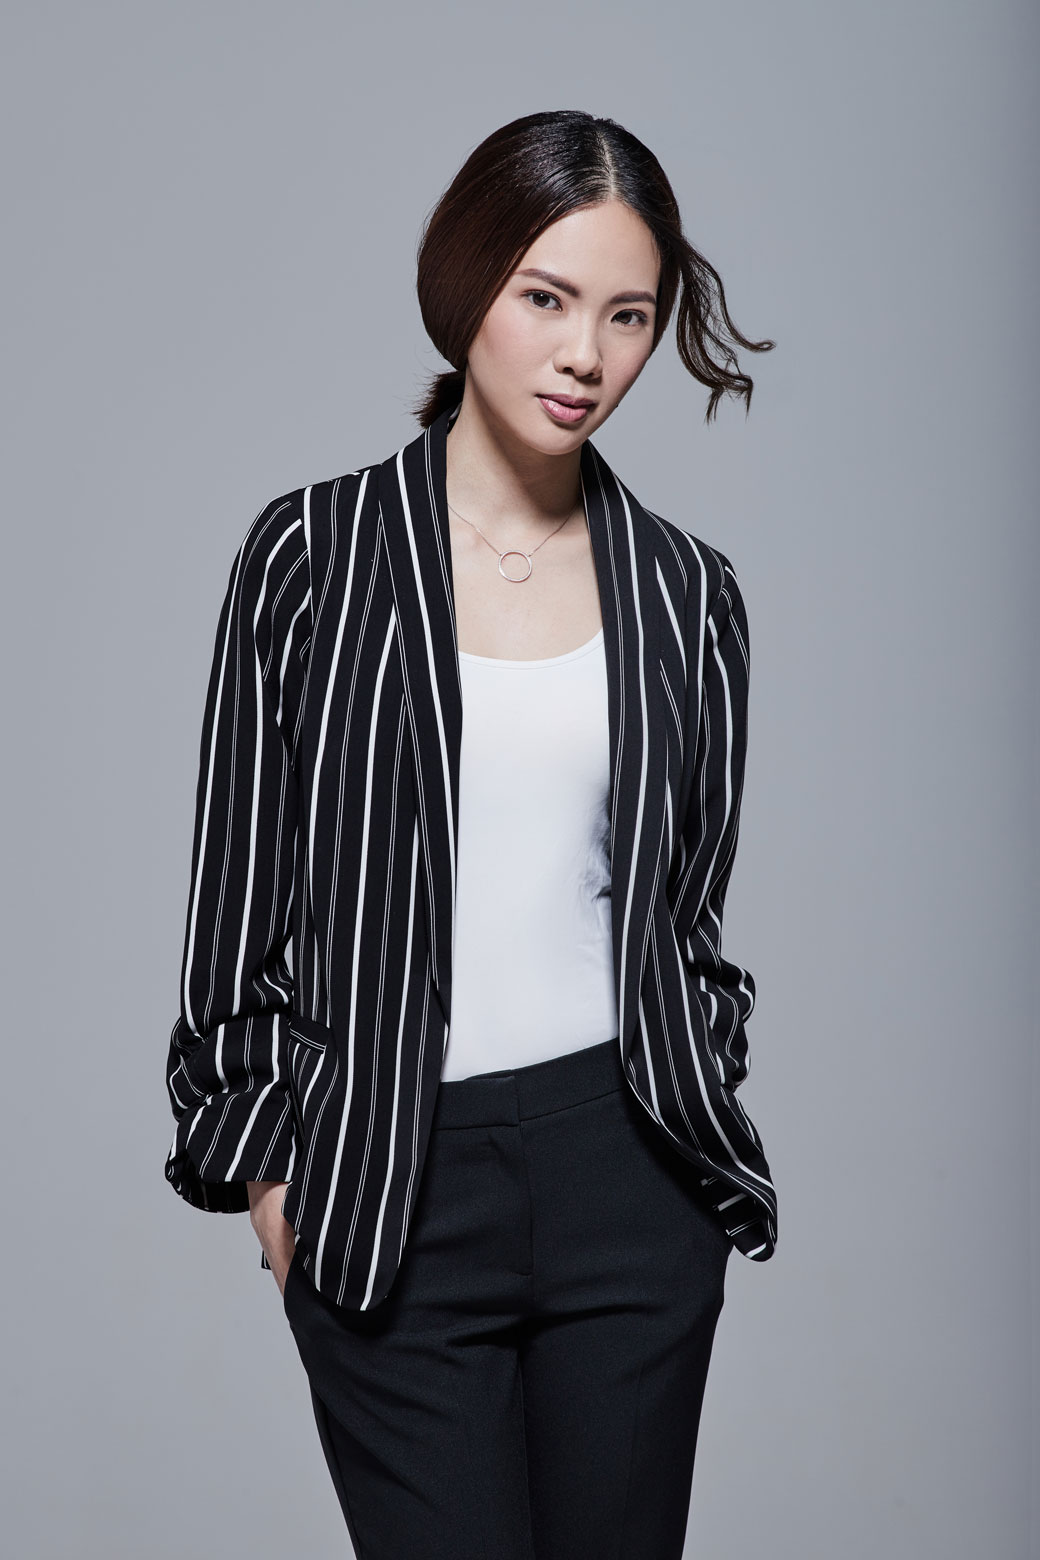 Profile - Choo Mei Sze